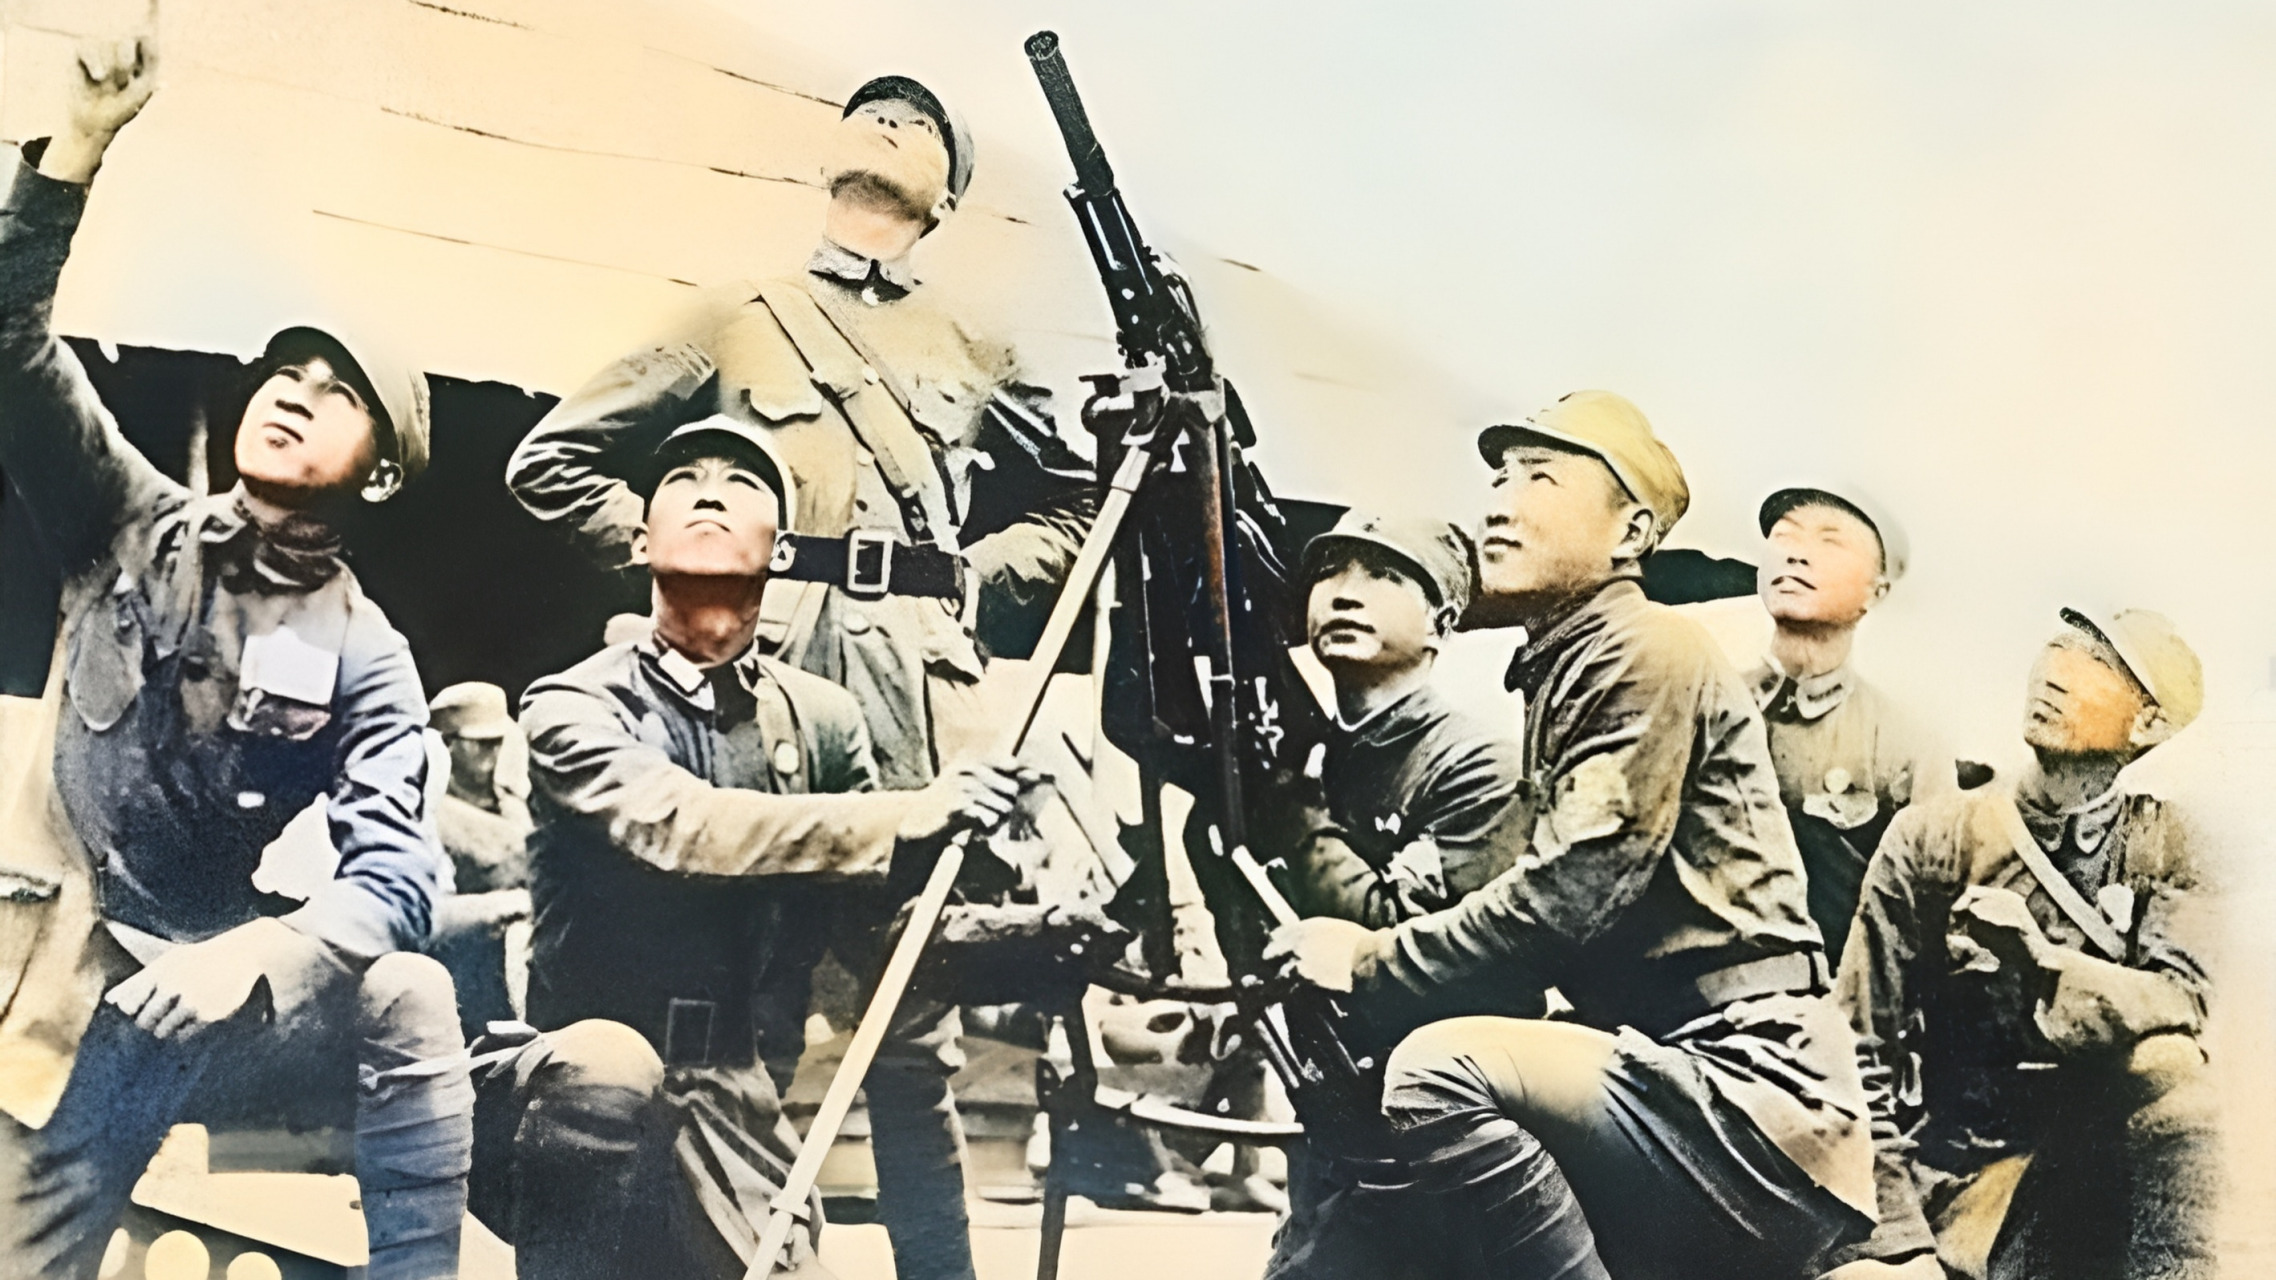 日军高射机枪图片